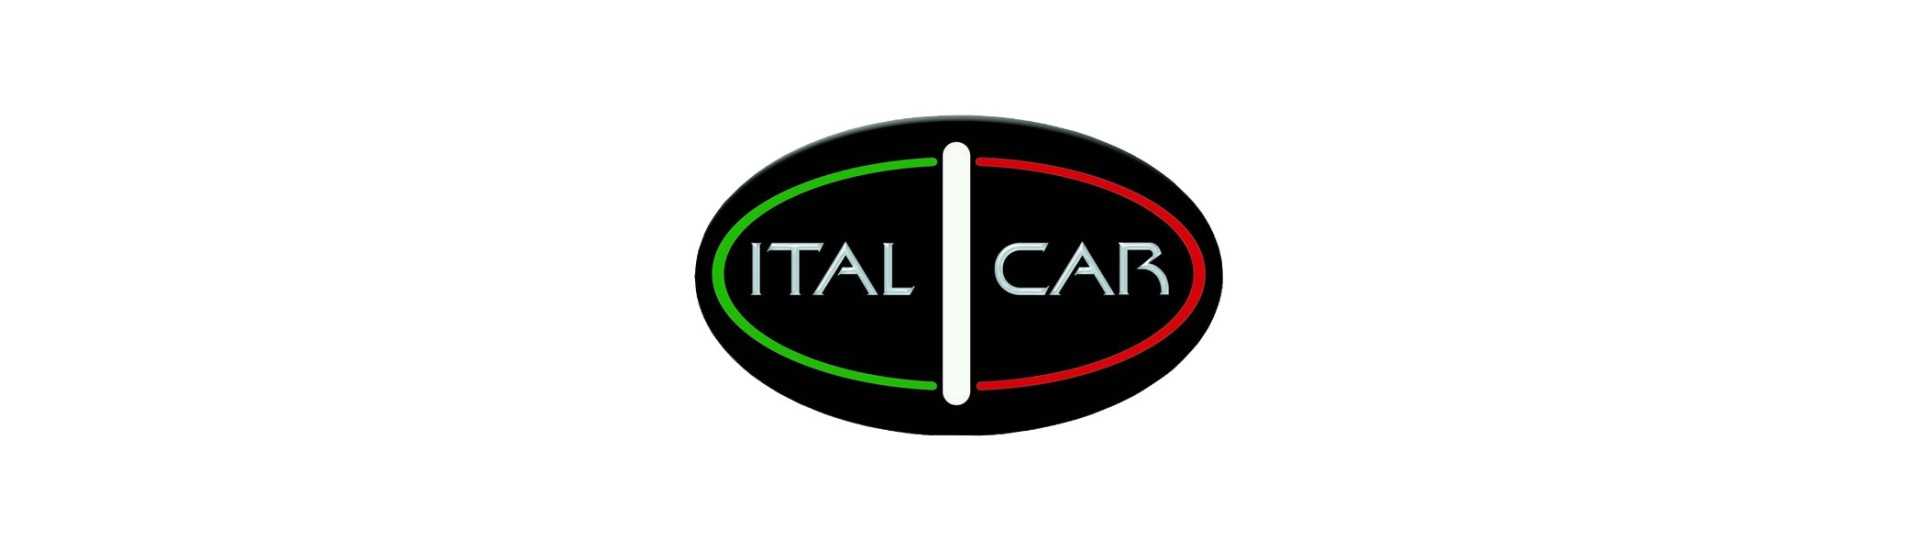 Triangolo anteriore al miglior prezzo per auto senza permesso Italcar